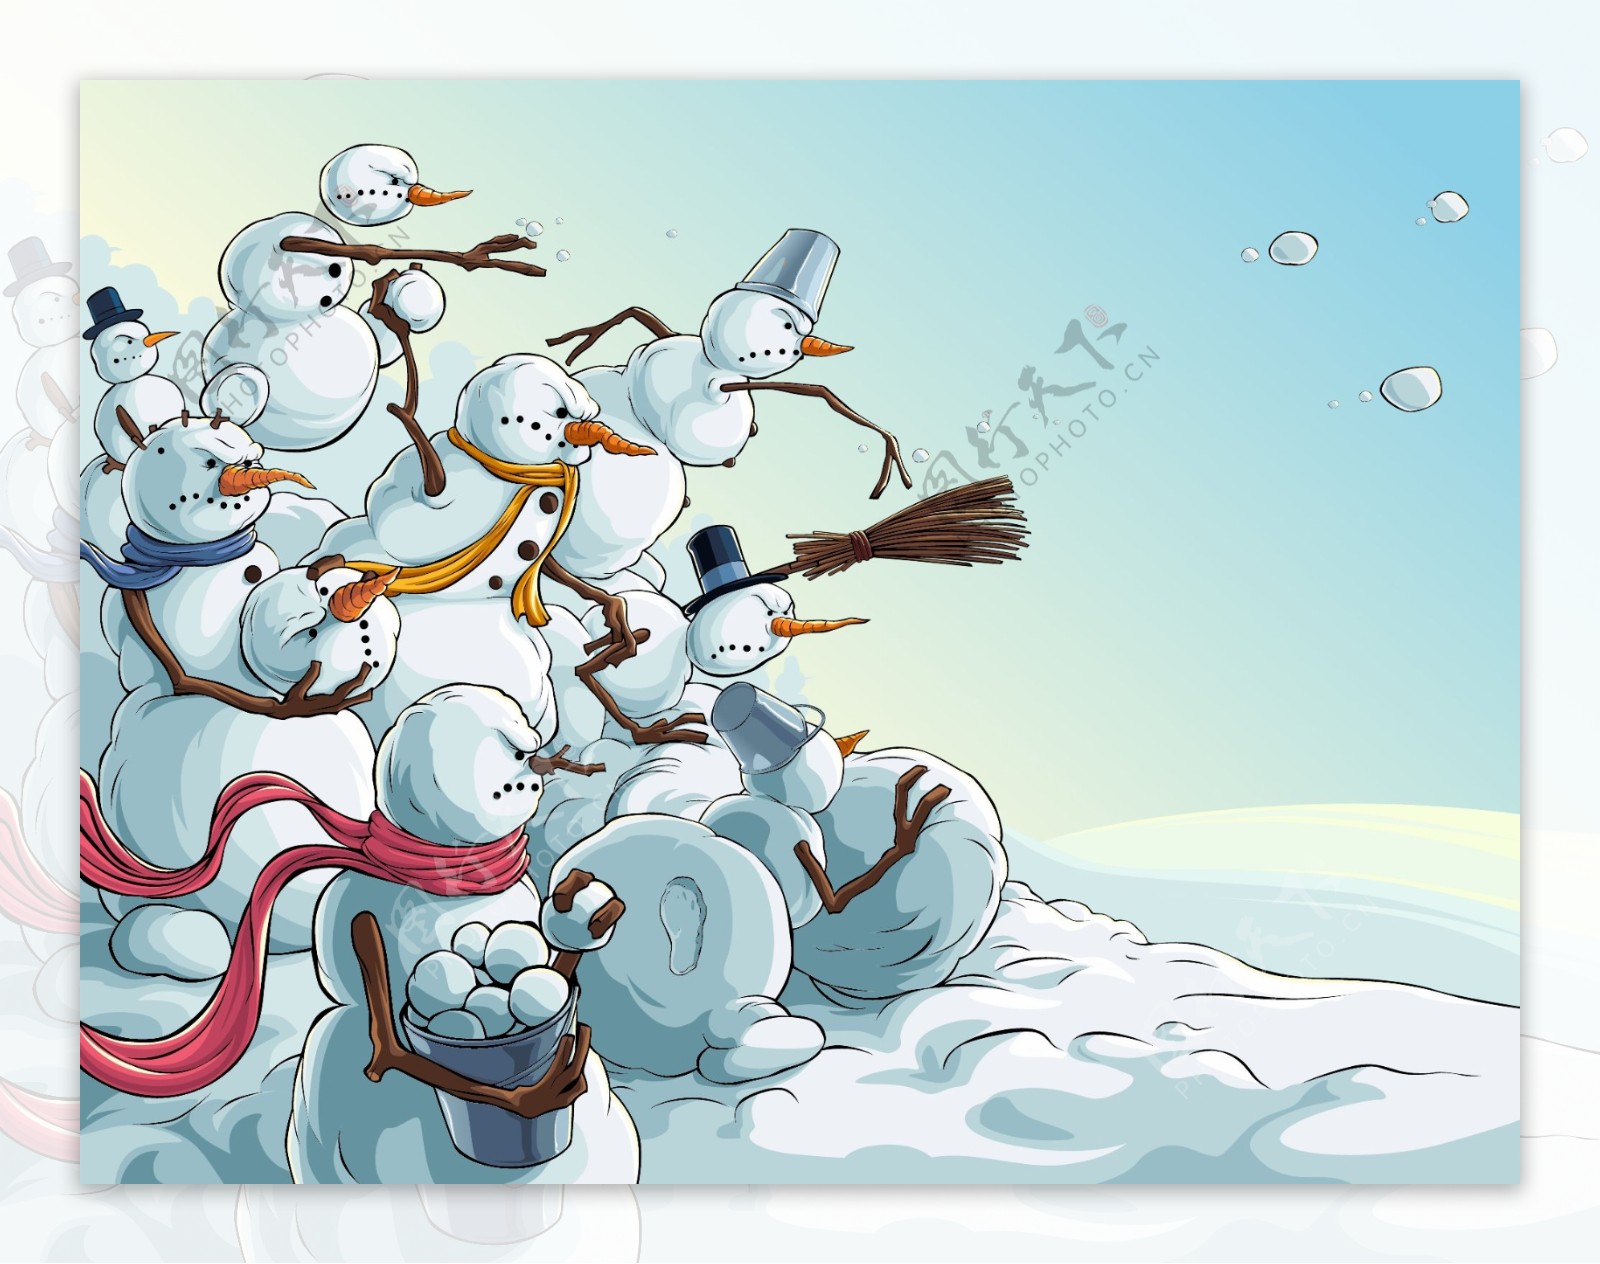 打雪仗的雪人漫画